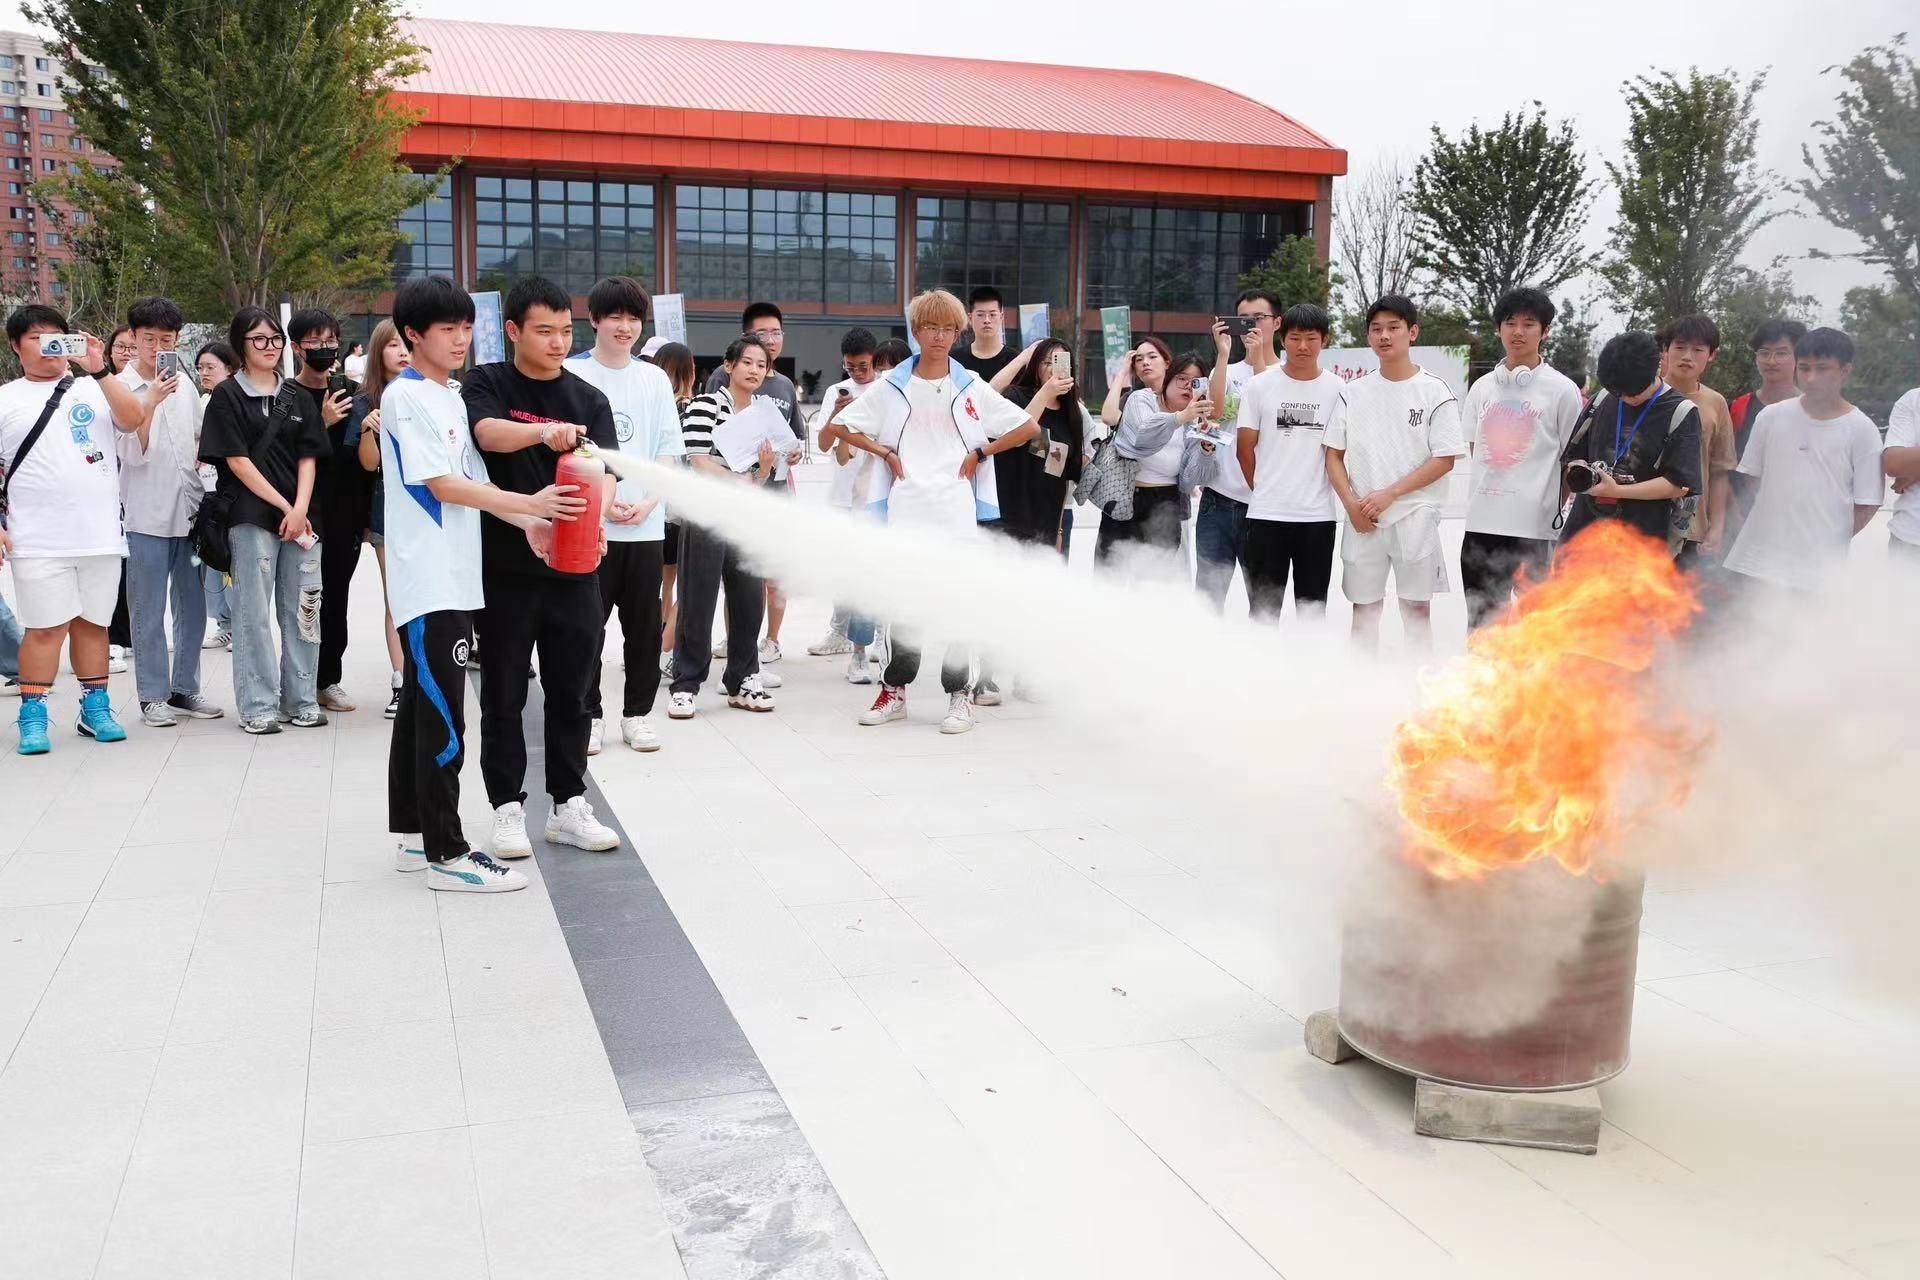 广州TTG战队应能量中国邀请参加校园消防公益科普活动